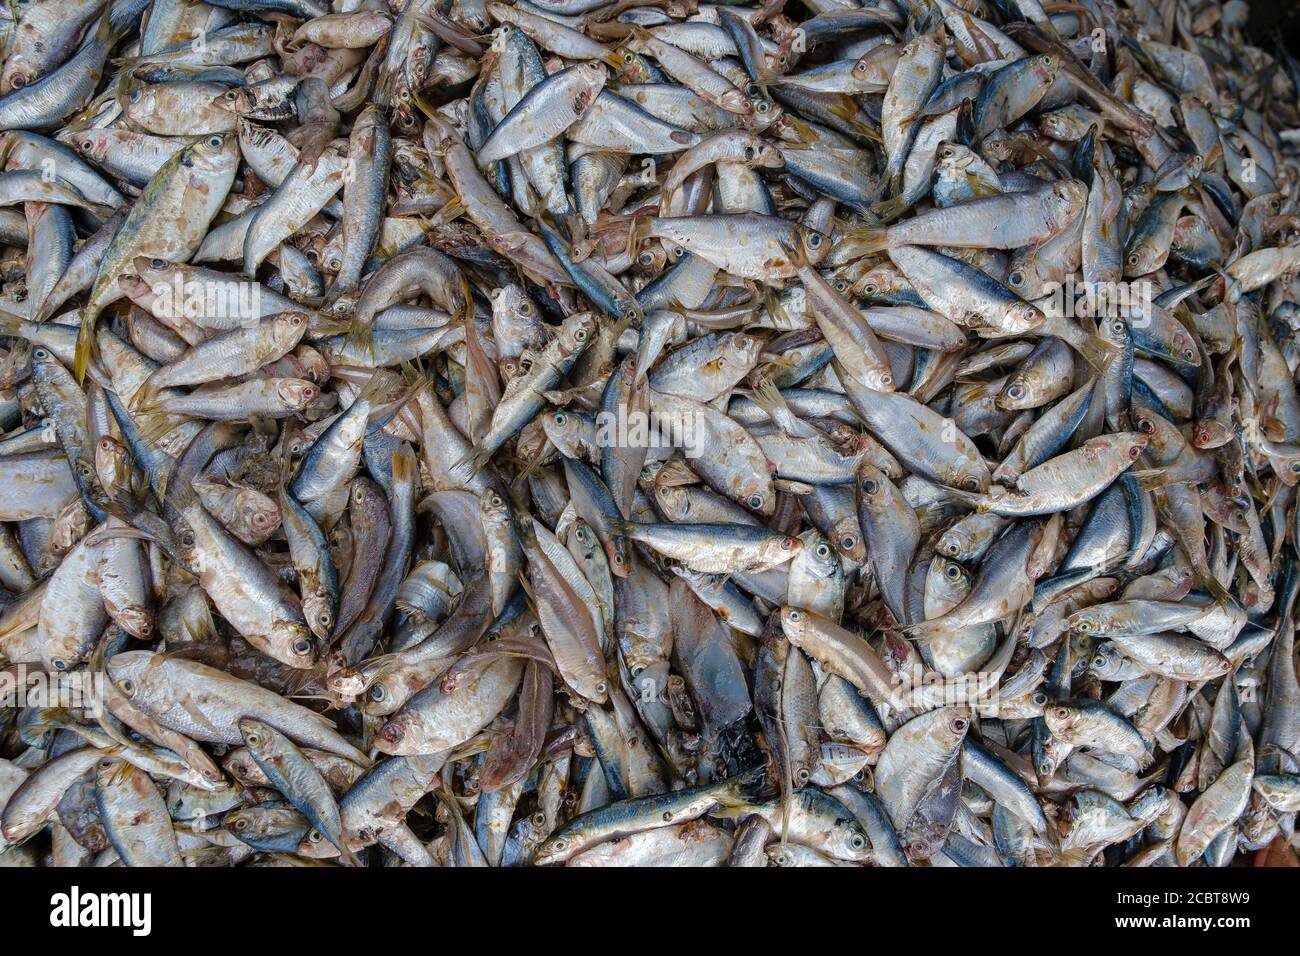 Frischer Fisch im Korb auf dem Fischmarkt verkauft werden, horizontale Schuss, Ha Long Bay, Vietnam, Fischerdorf. Toter Fisch aus Asien aus der Bucht. Stockfoto